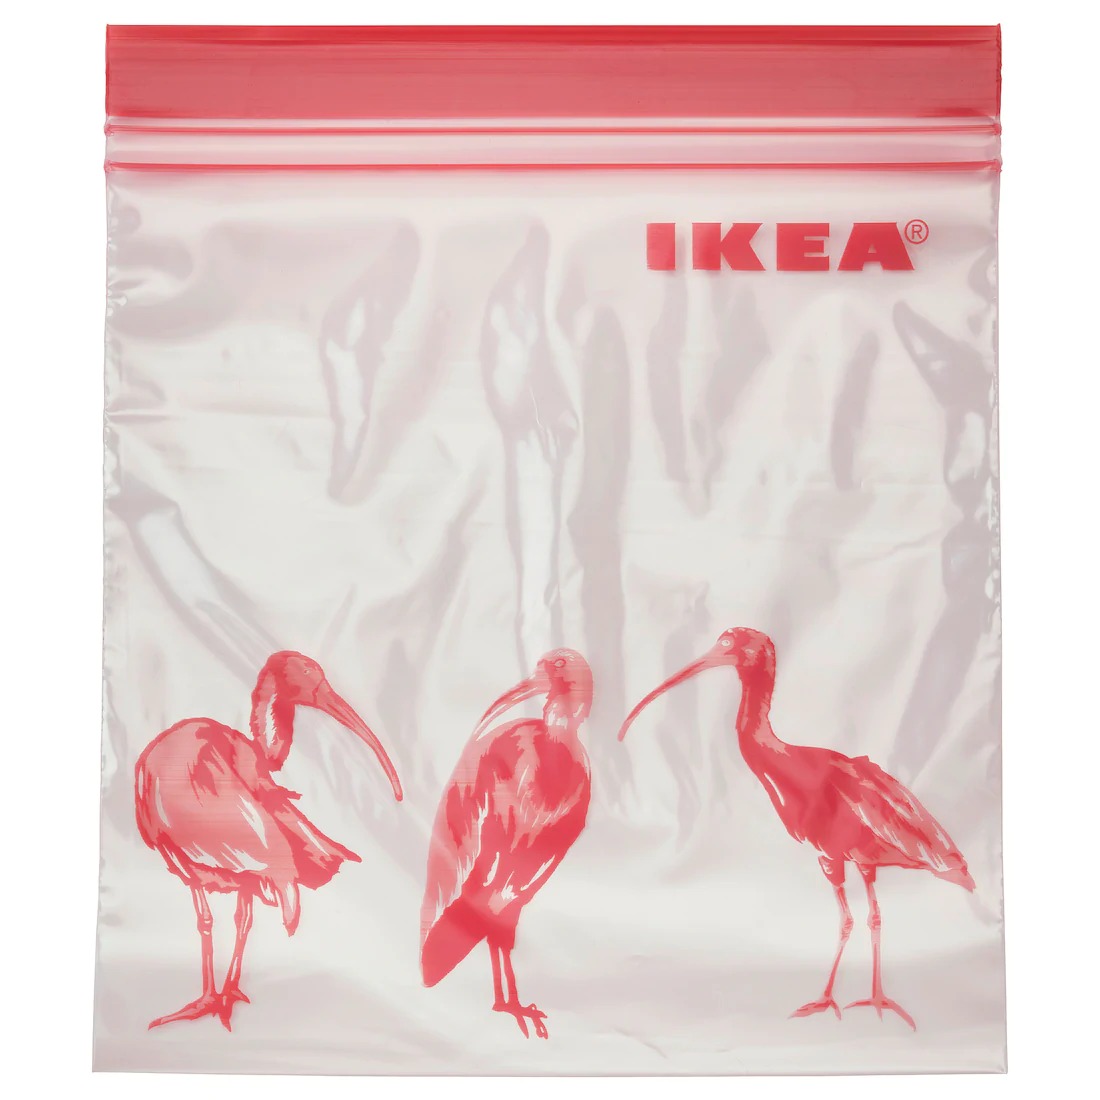 【IKEA Original】ISTAD -イースタード- フリーザーバッグ 模様入り ピンク 1 L 25 ピースの画像